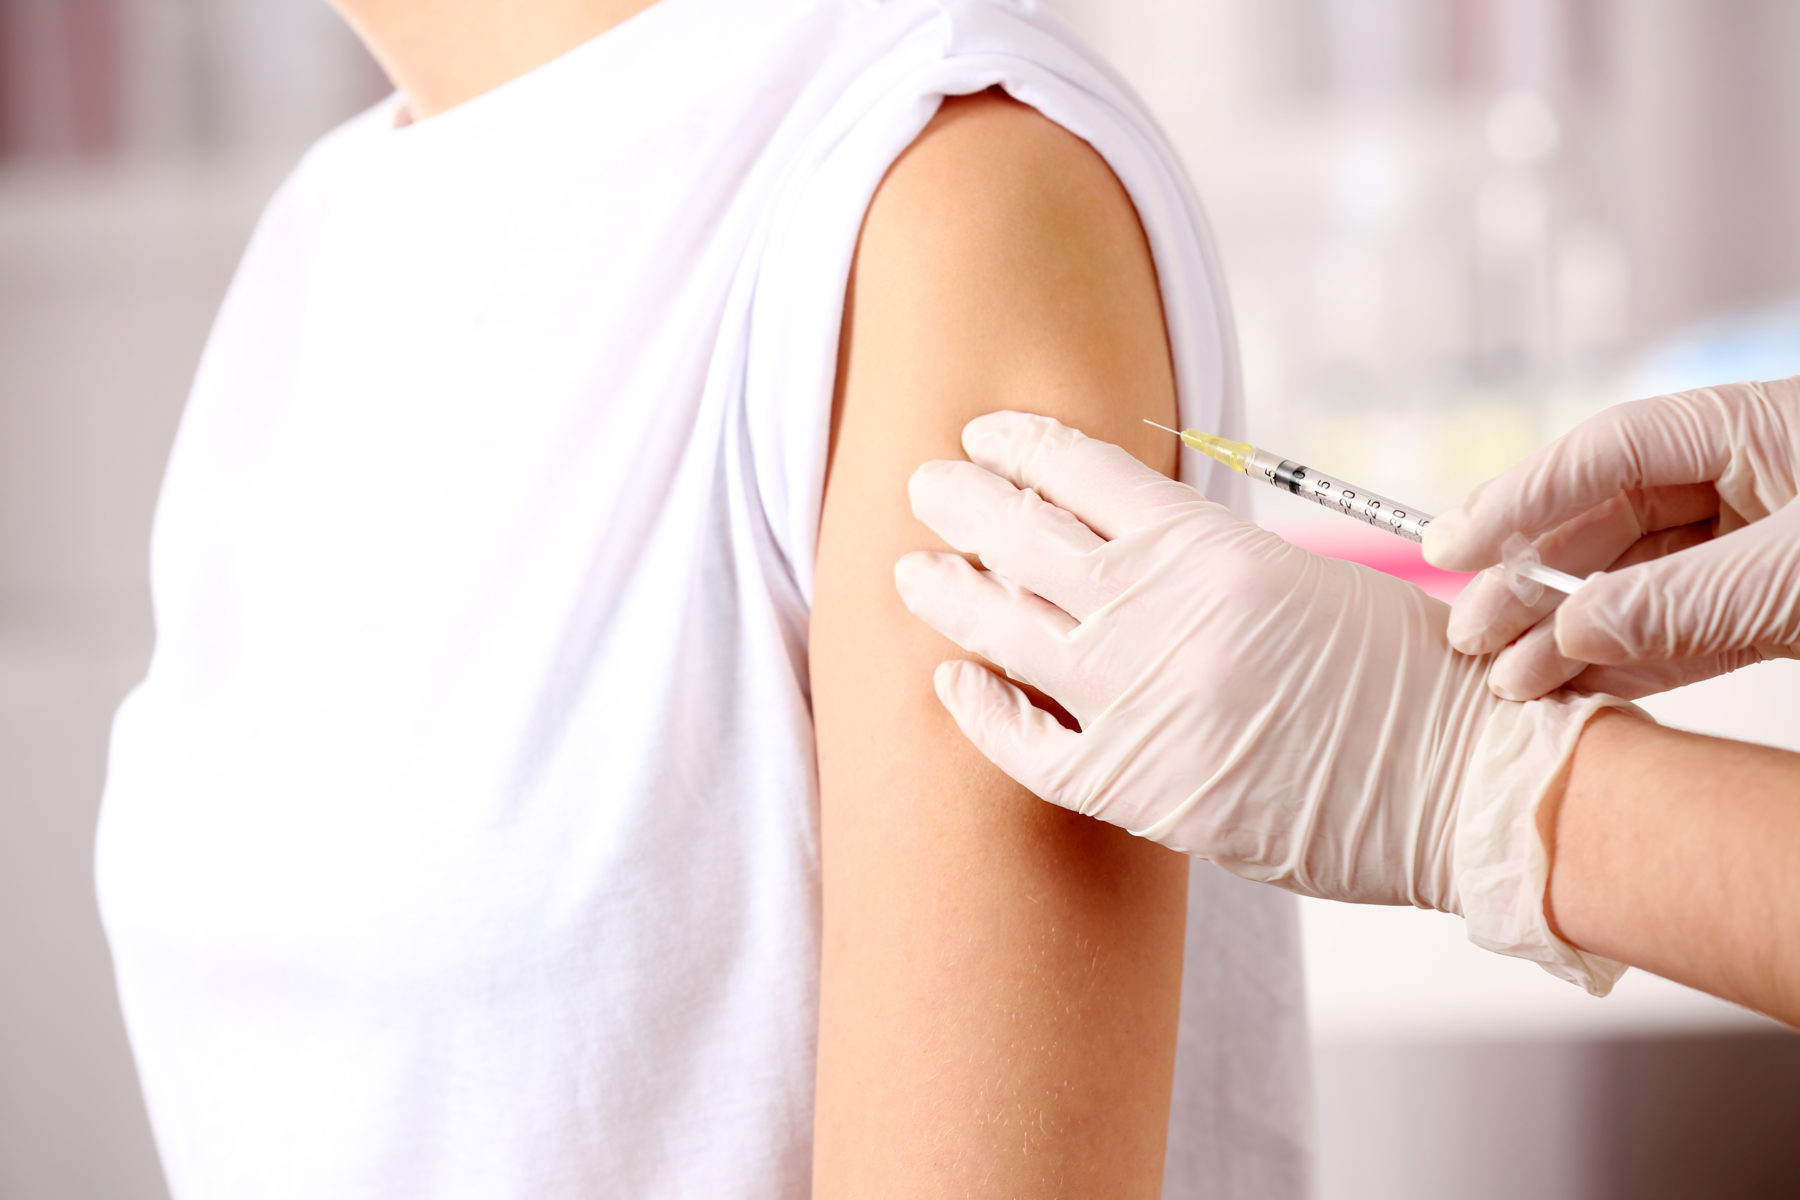 Vaccinatie van 5- tot en met 11-jarigen tegen COVID-19, een gezonde keuze? 